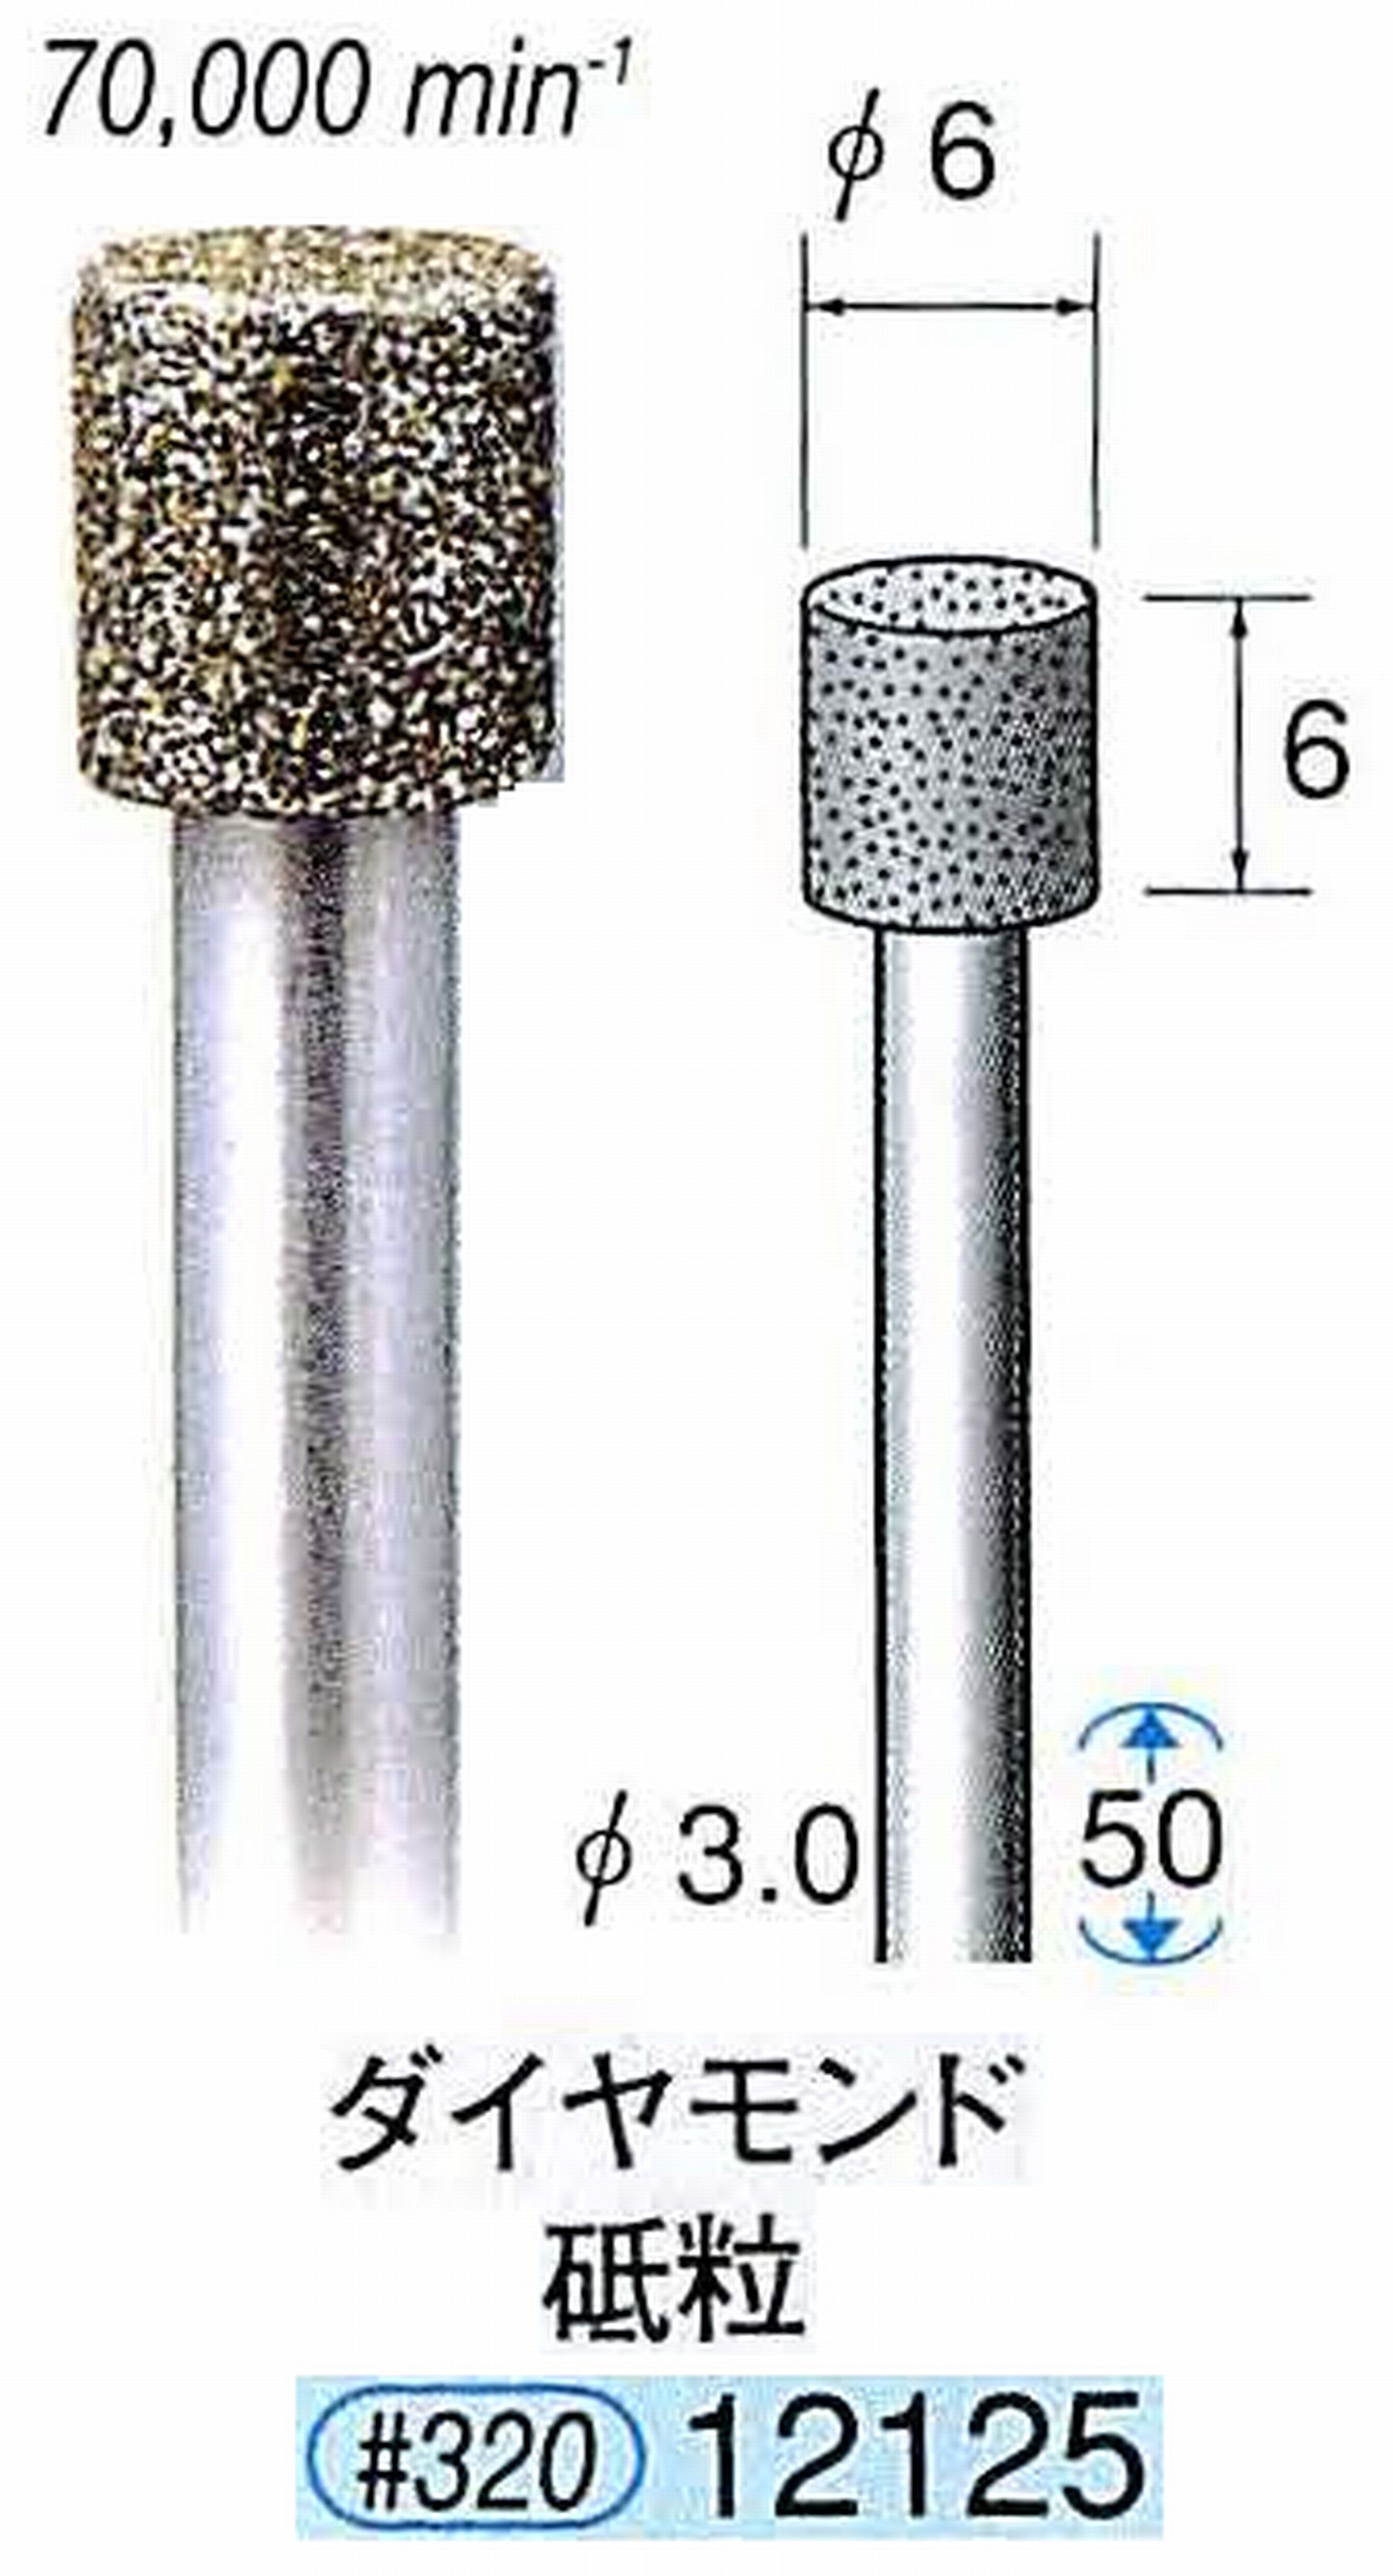 ナカニシ/NAKANISHI 電着ダイヤモンド ダイヤモンド砥粒 軸径(シャンク)φ3.0mm 12125